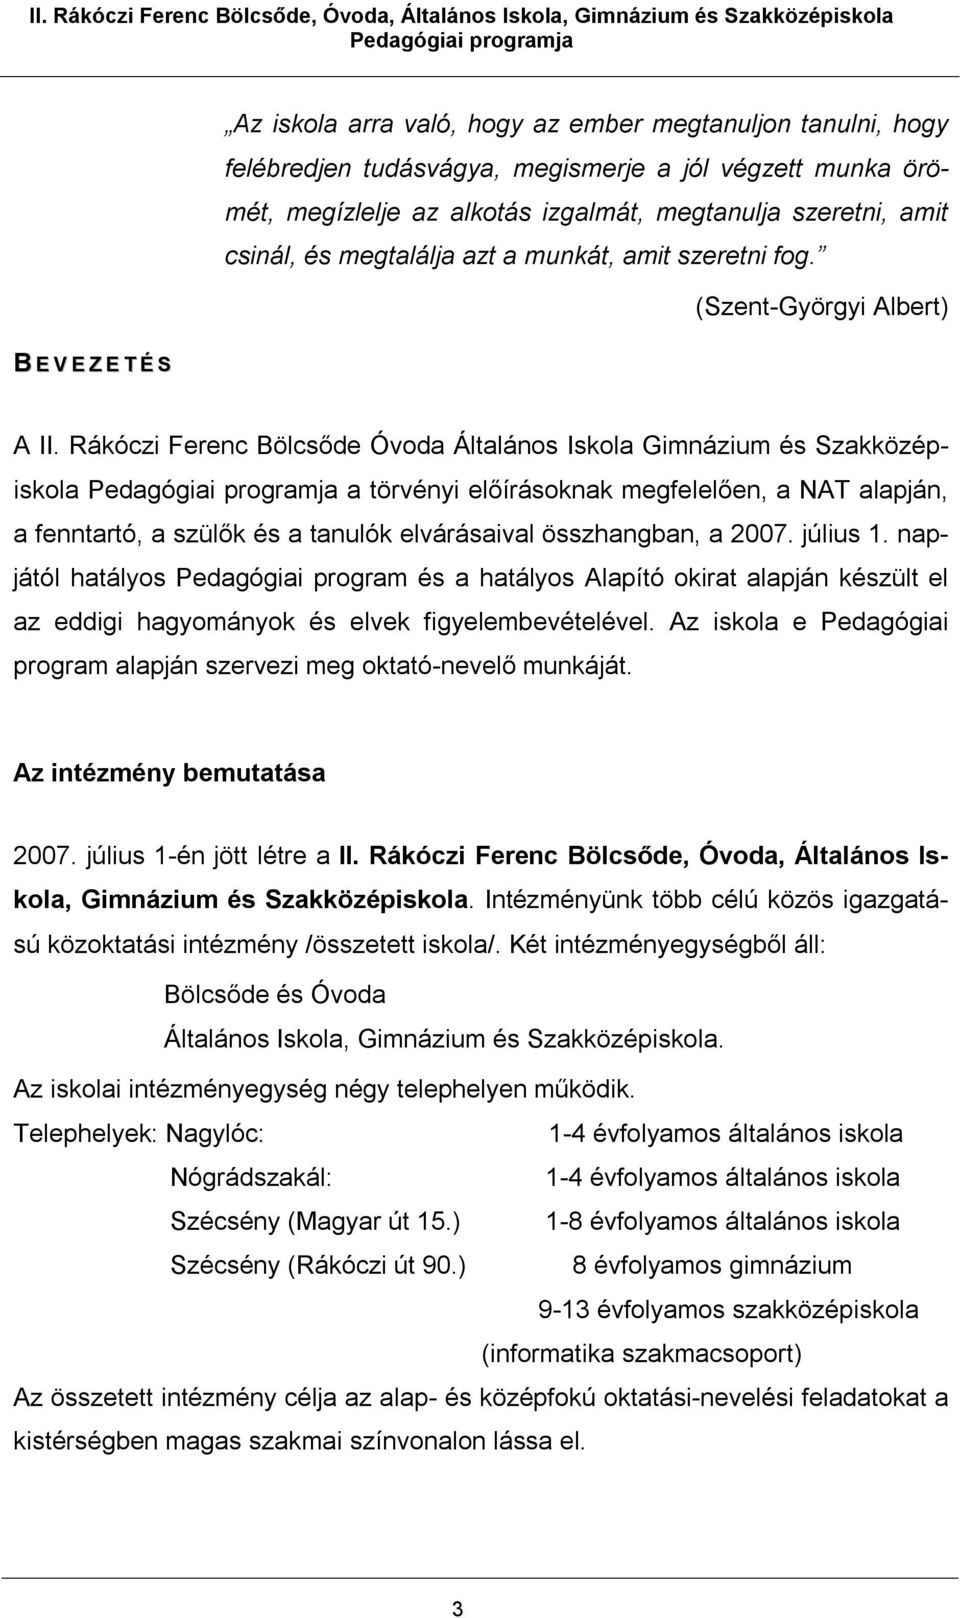 Rákóczi Ferenc Bölcsőde Óvoda Általános Iskola Gimnázium és Szakközépiskola a törvényi előírásoknak megfelelően, a NAT alapján, a fenntartó, a szülők és a tanulók elvárásaival összhangban, a 2007.